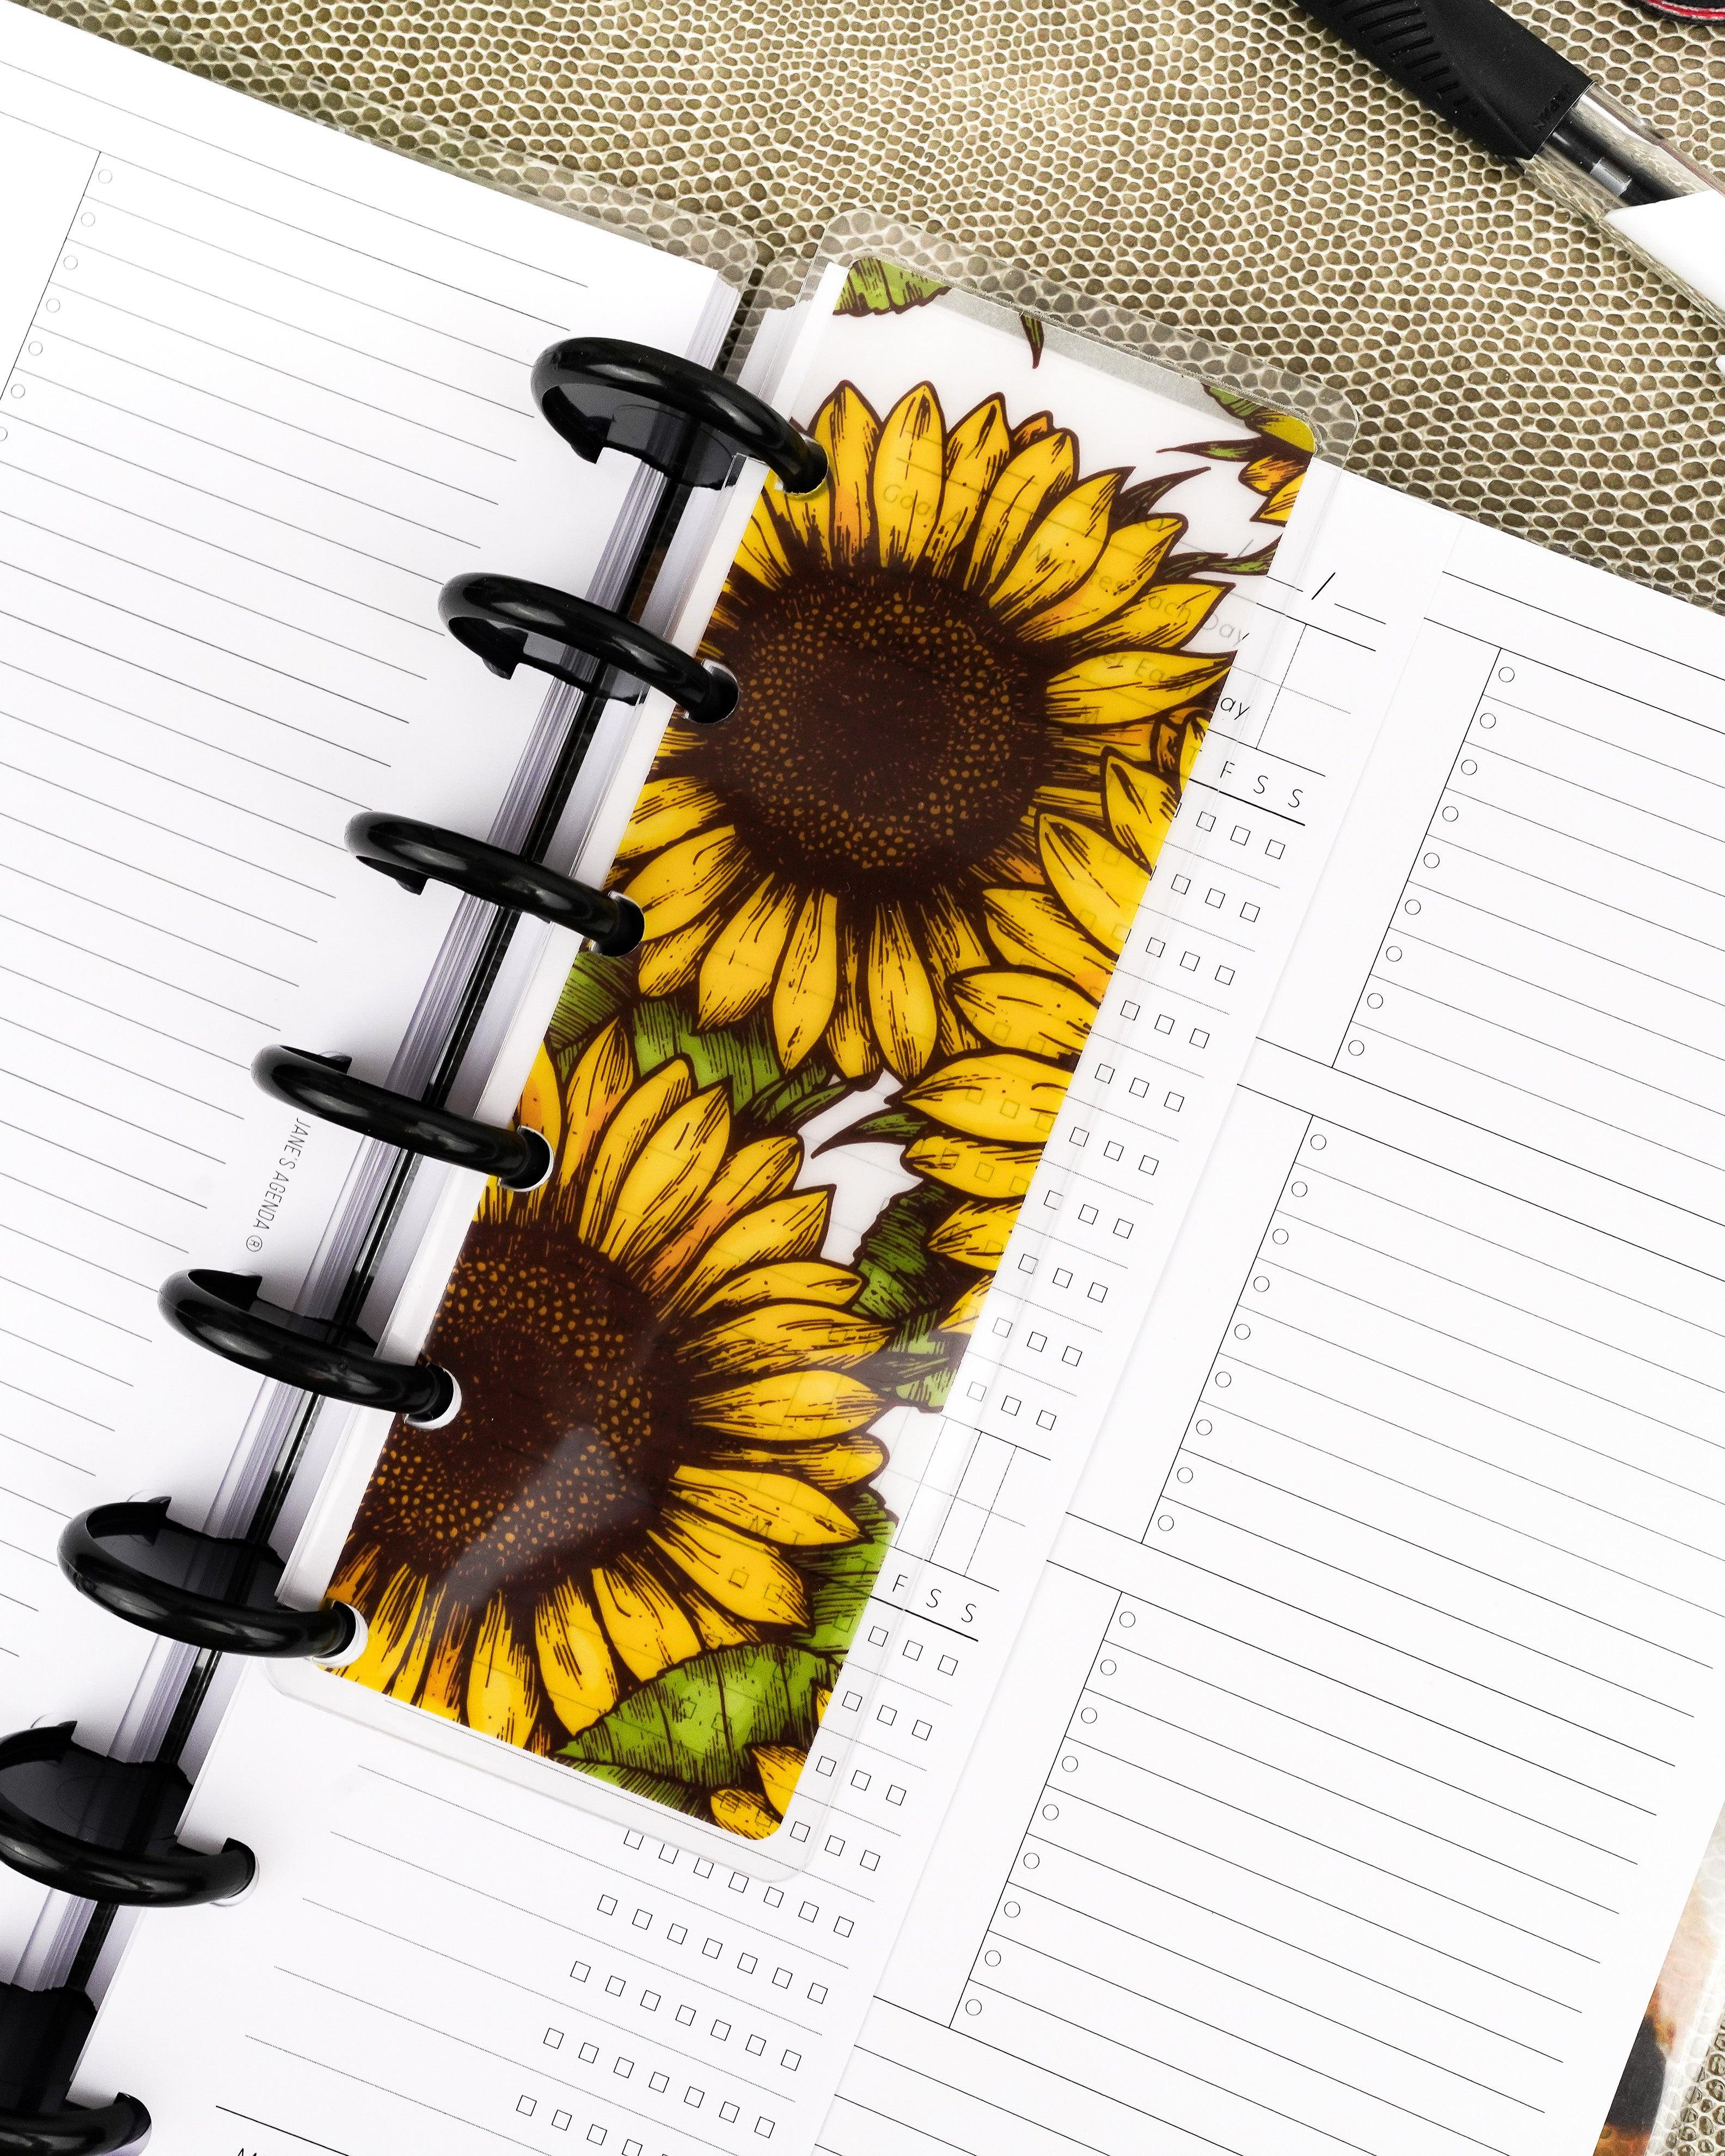 Sunflower discbound planner pagefinder bookmark by Jane's Agenda®.